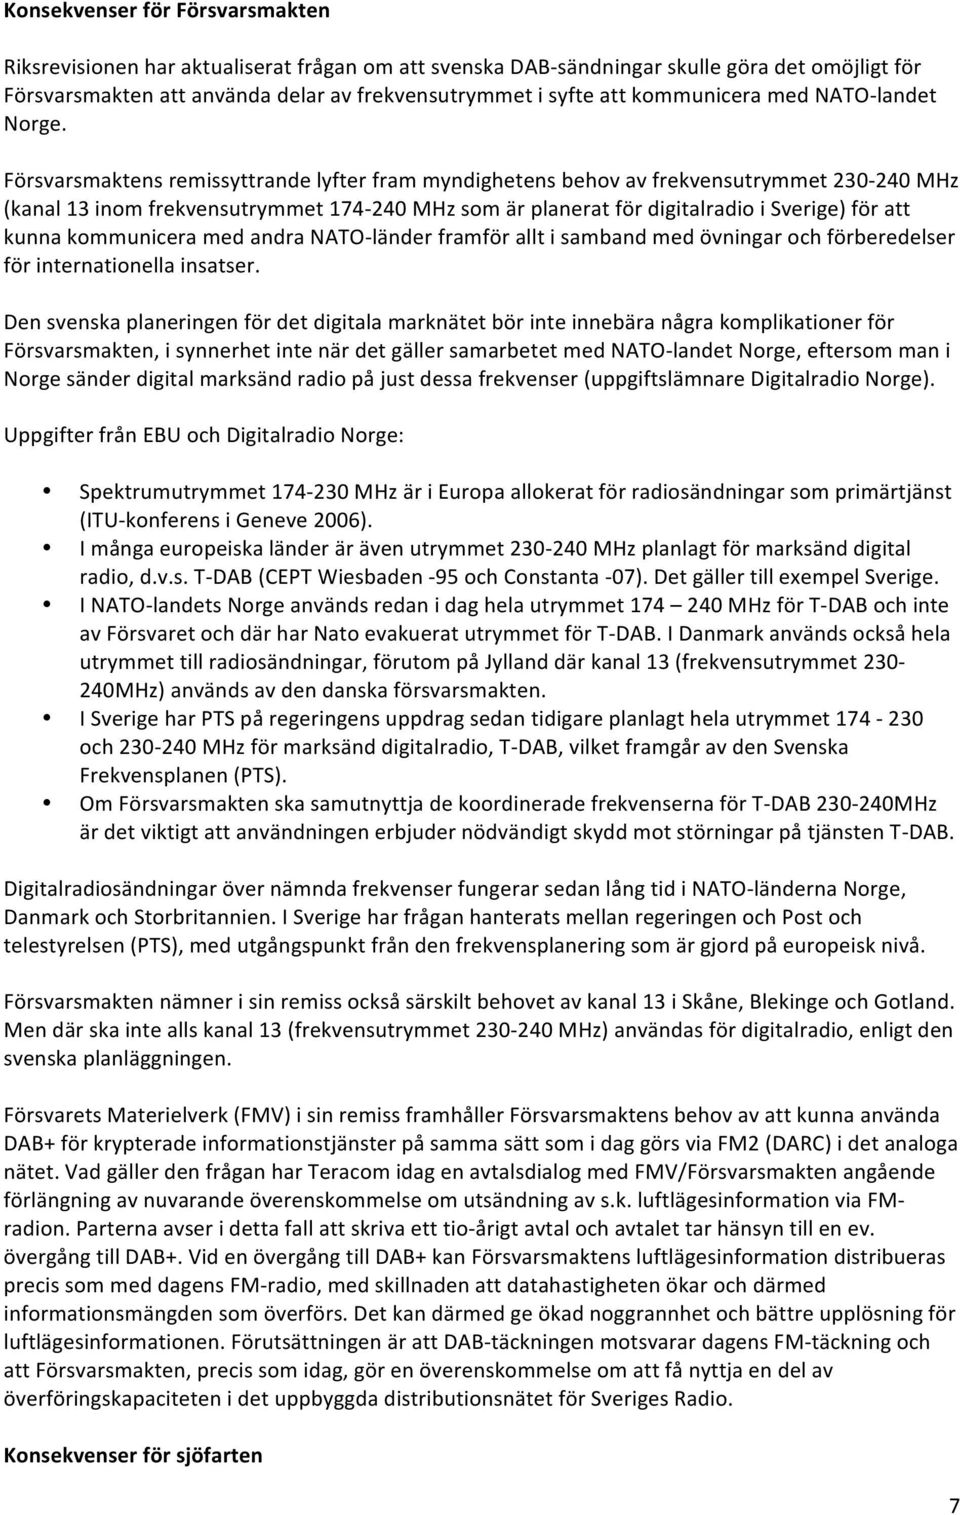 Försvarsmaktens remissyttrande lyfter fram myndighetens behov av frekvensutrymmet 230-240 MHz (kanal 13 inom frekvensutrymmet 174-240 MHz som är planerat för digitalradio i Sverige) för att kunna